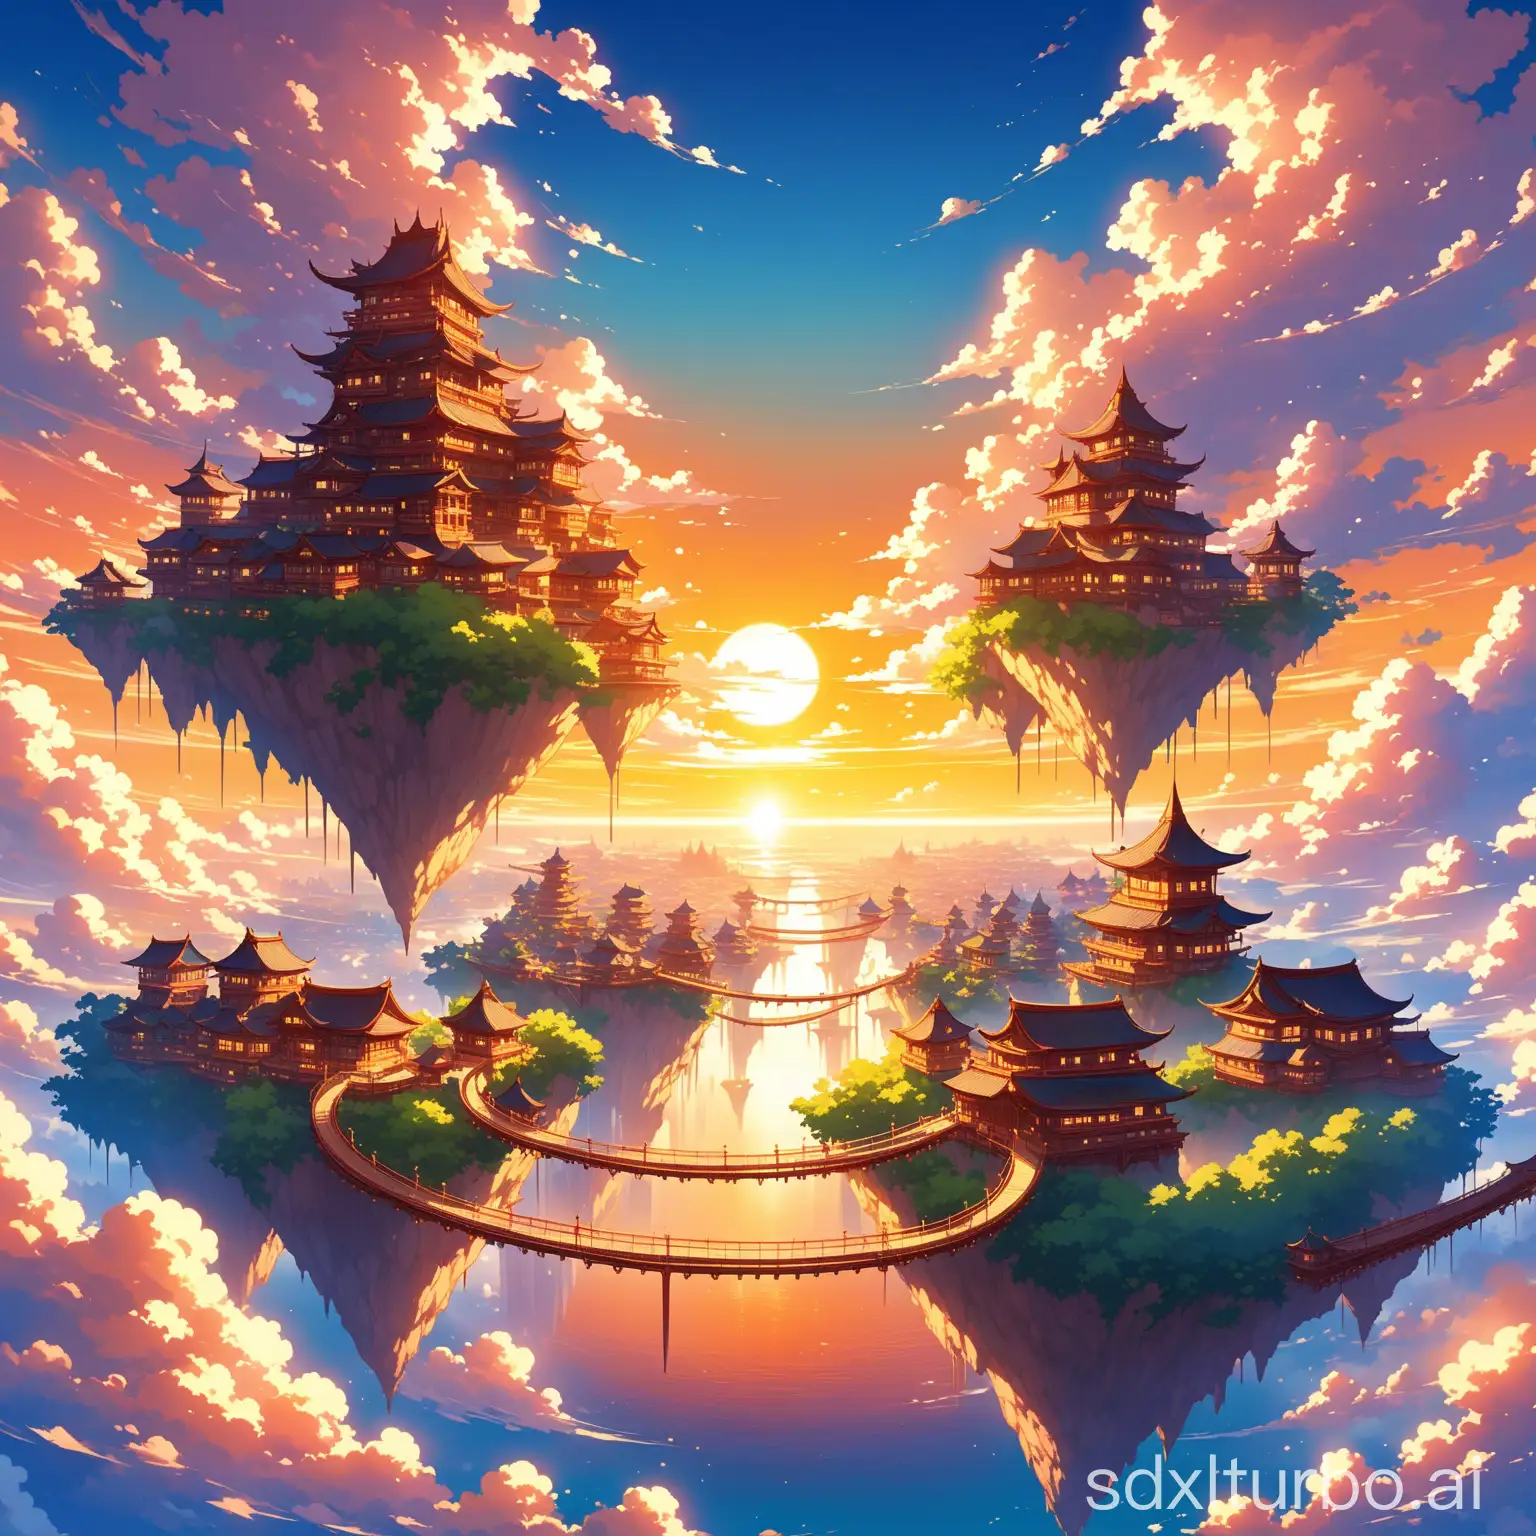 动漫风格：一座漂浮在天空中的奇幻城市，拥有精致的建筑、浮岛和连接桥梁，所有这些都以飘浮的云朵和夕阳为背景